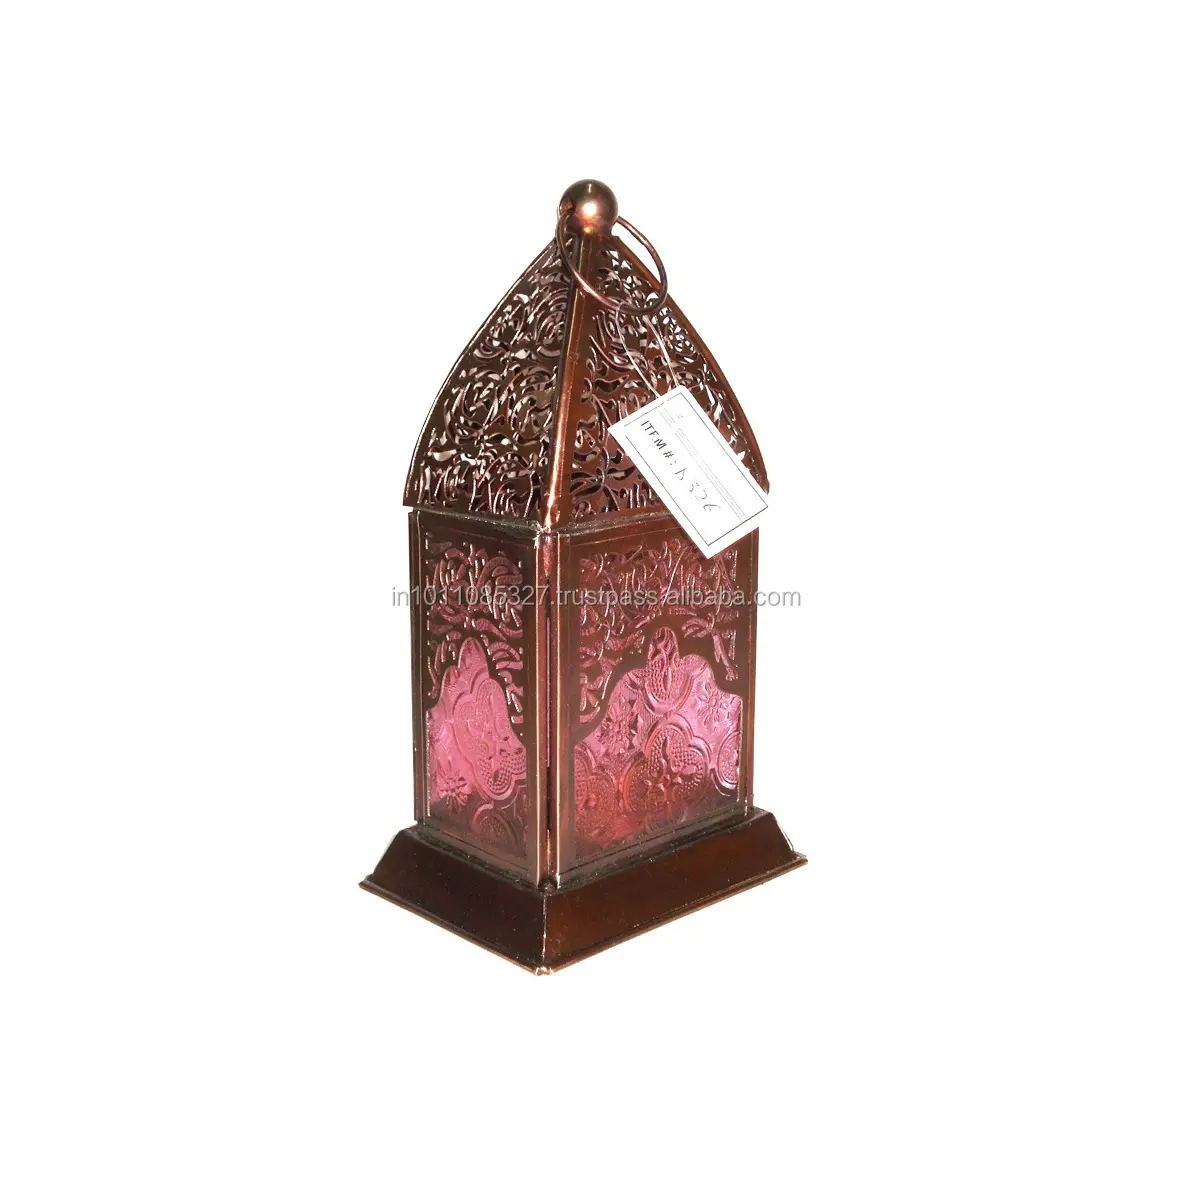 Lanterna decorativa do marrocos, venda por atacado útil ferro de metal dourado com alça